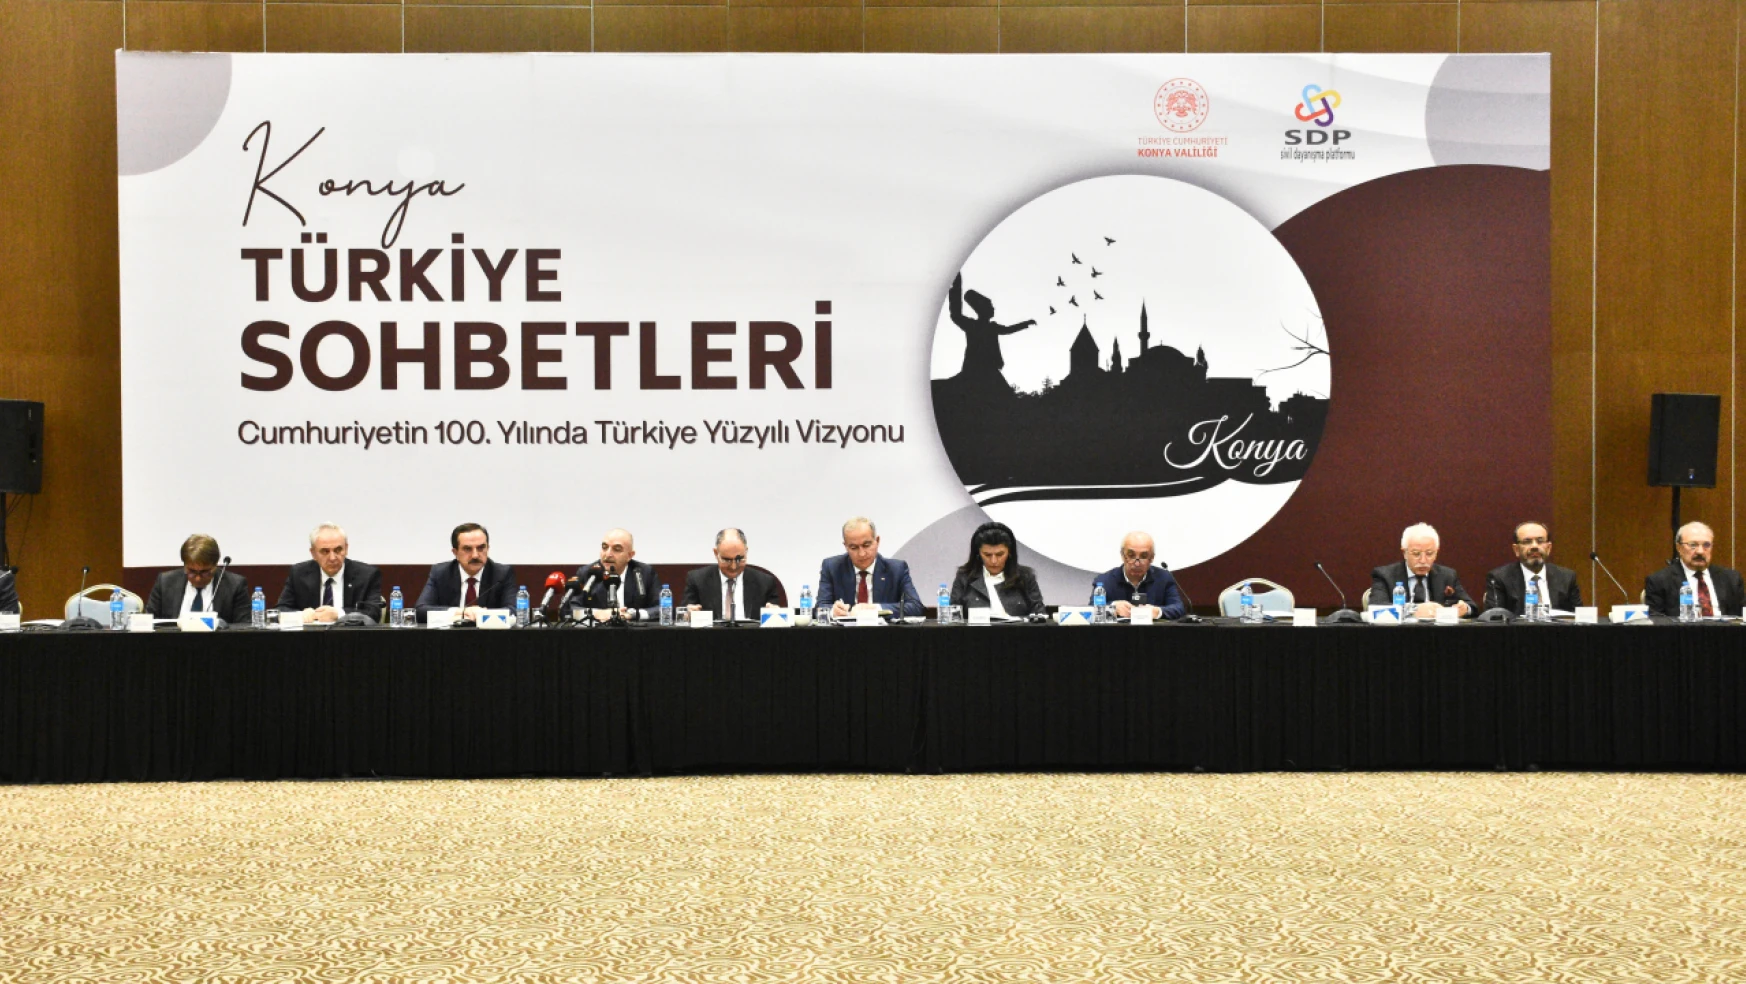 Konya'da 'Türkiye Sohbetleri' toplantısı düzenlendi